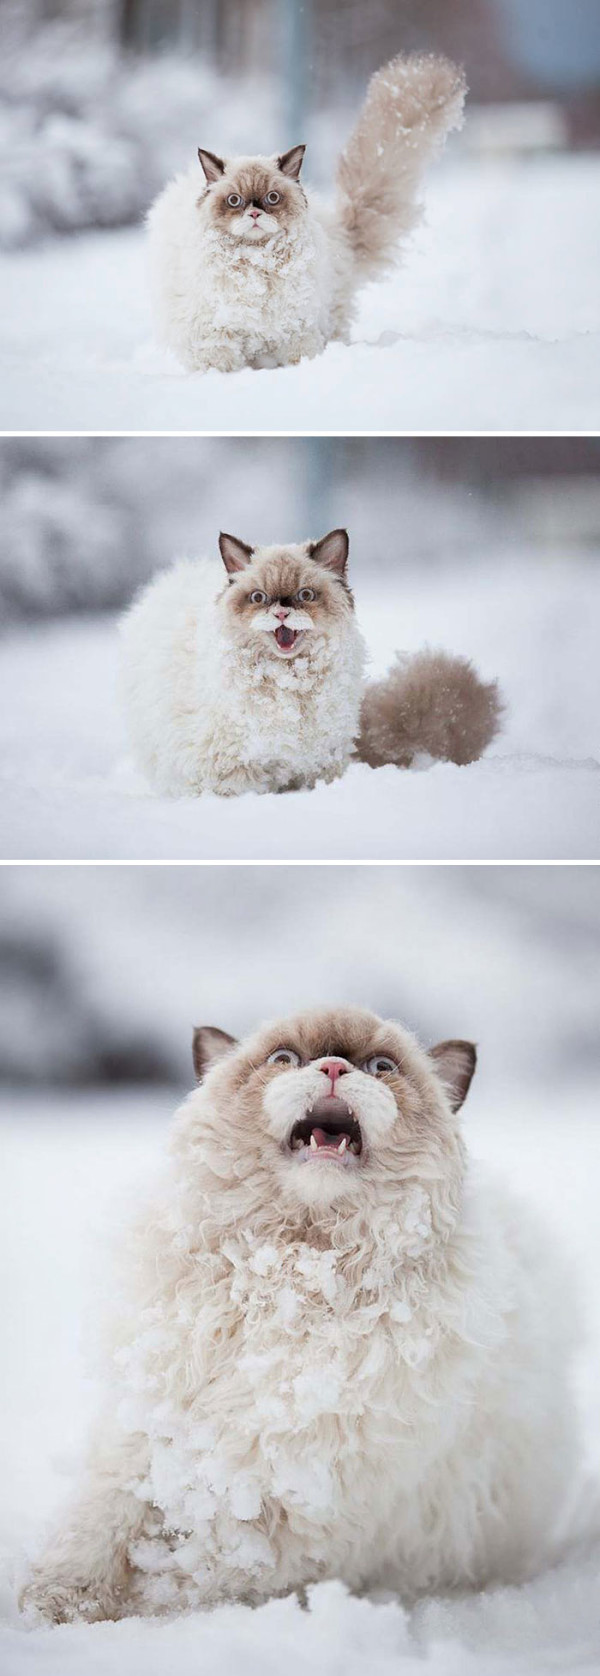 кот увидел снег